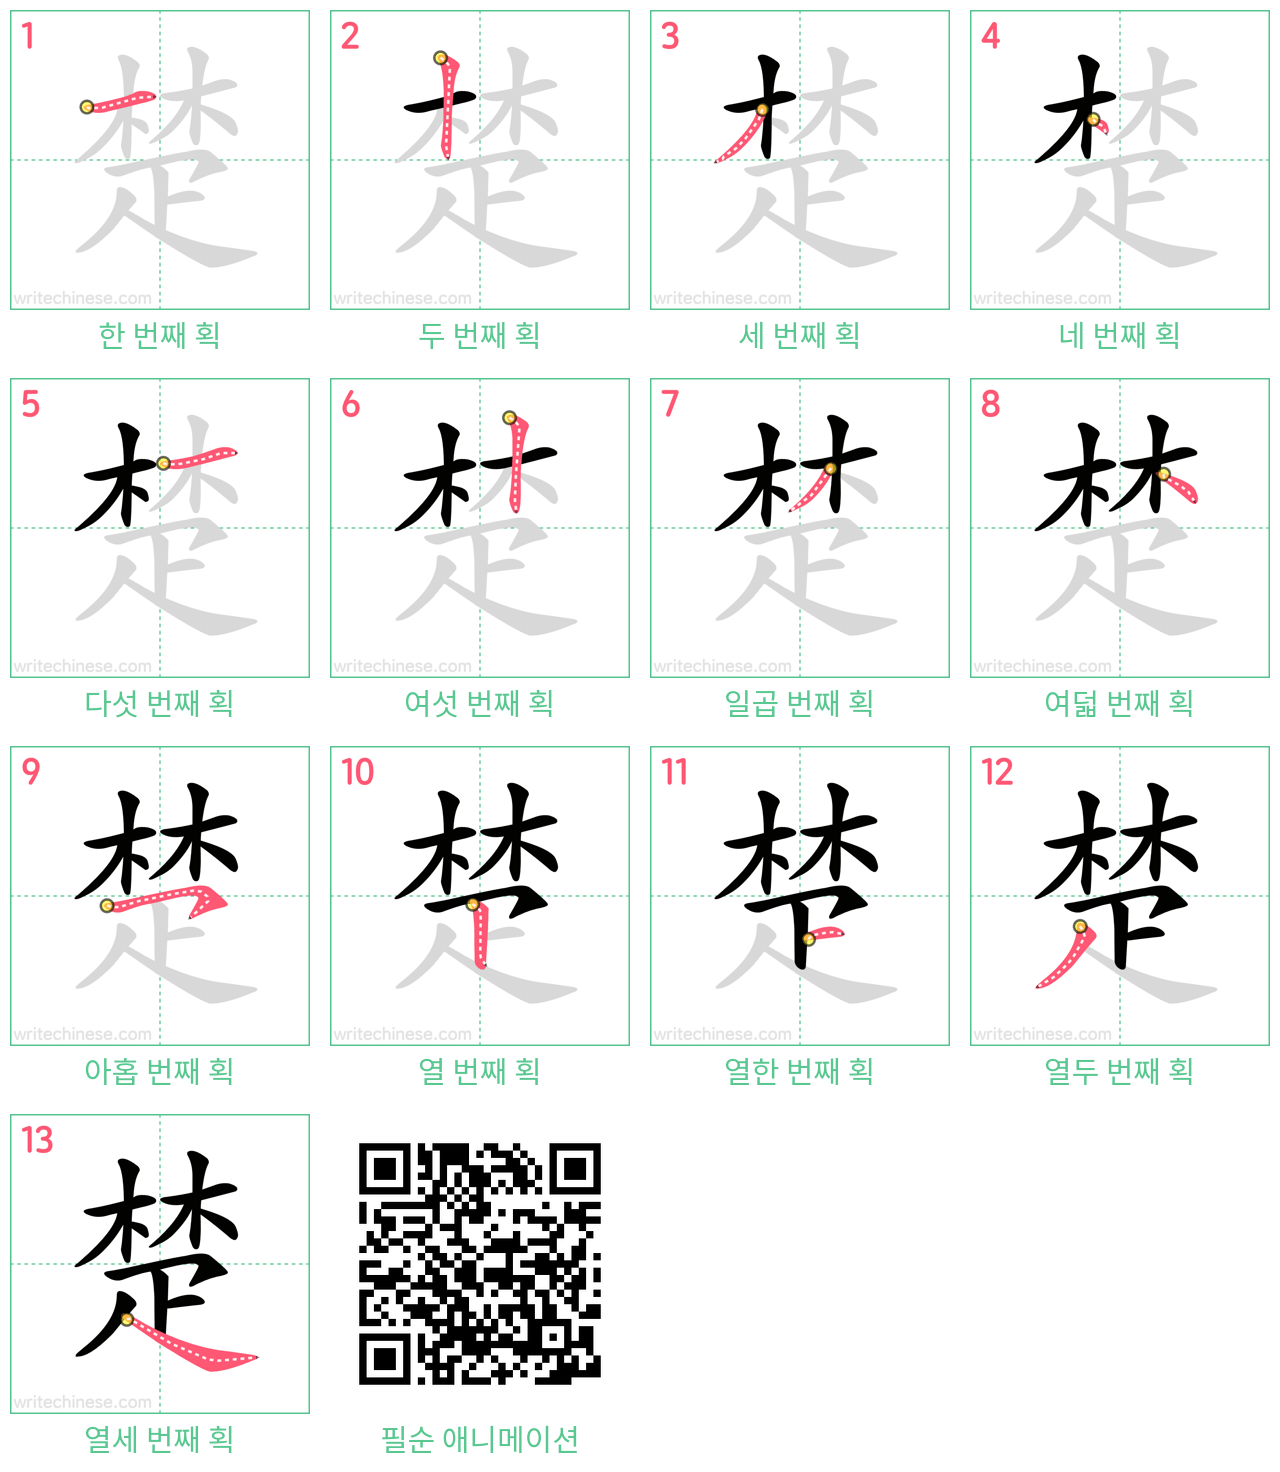 楚 step-by-step stroke order diagrams